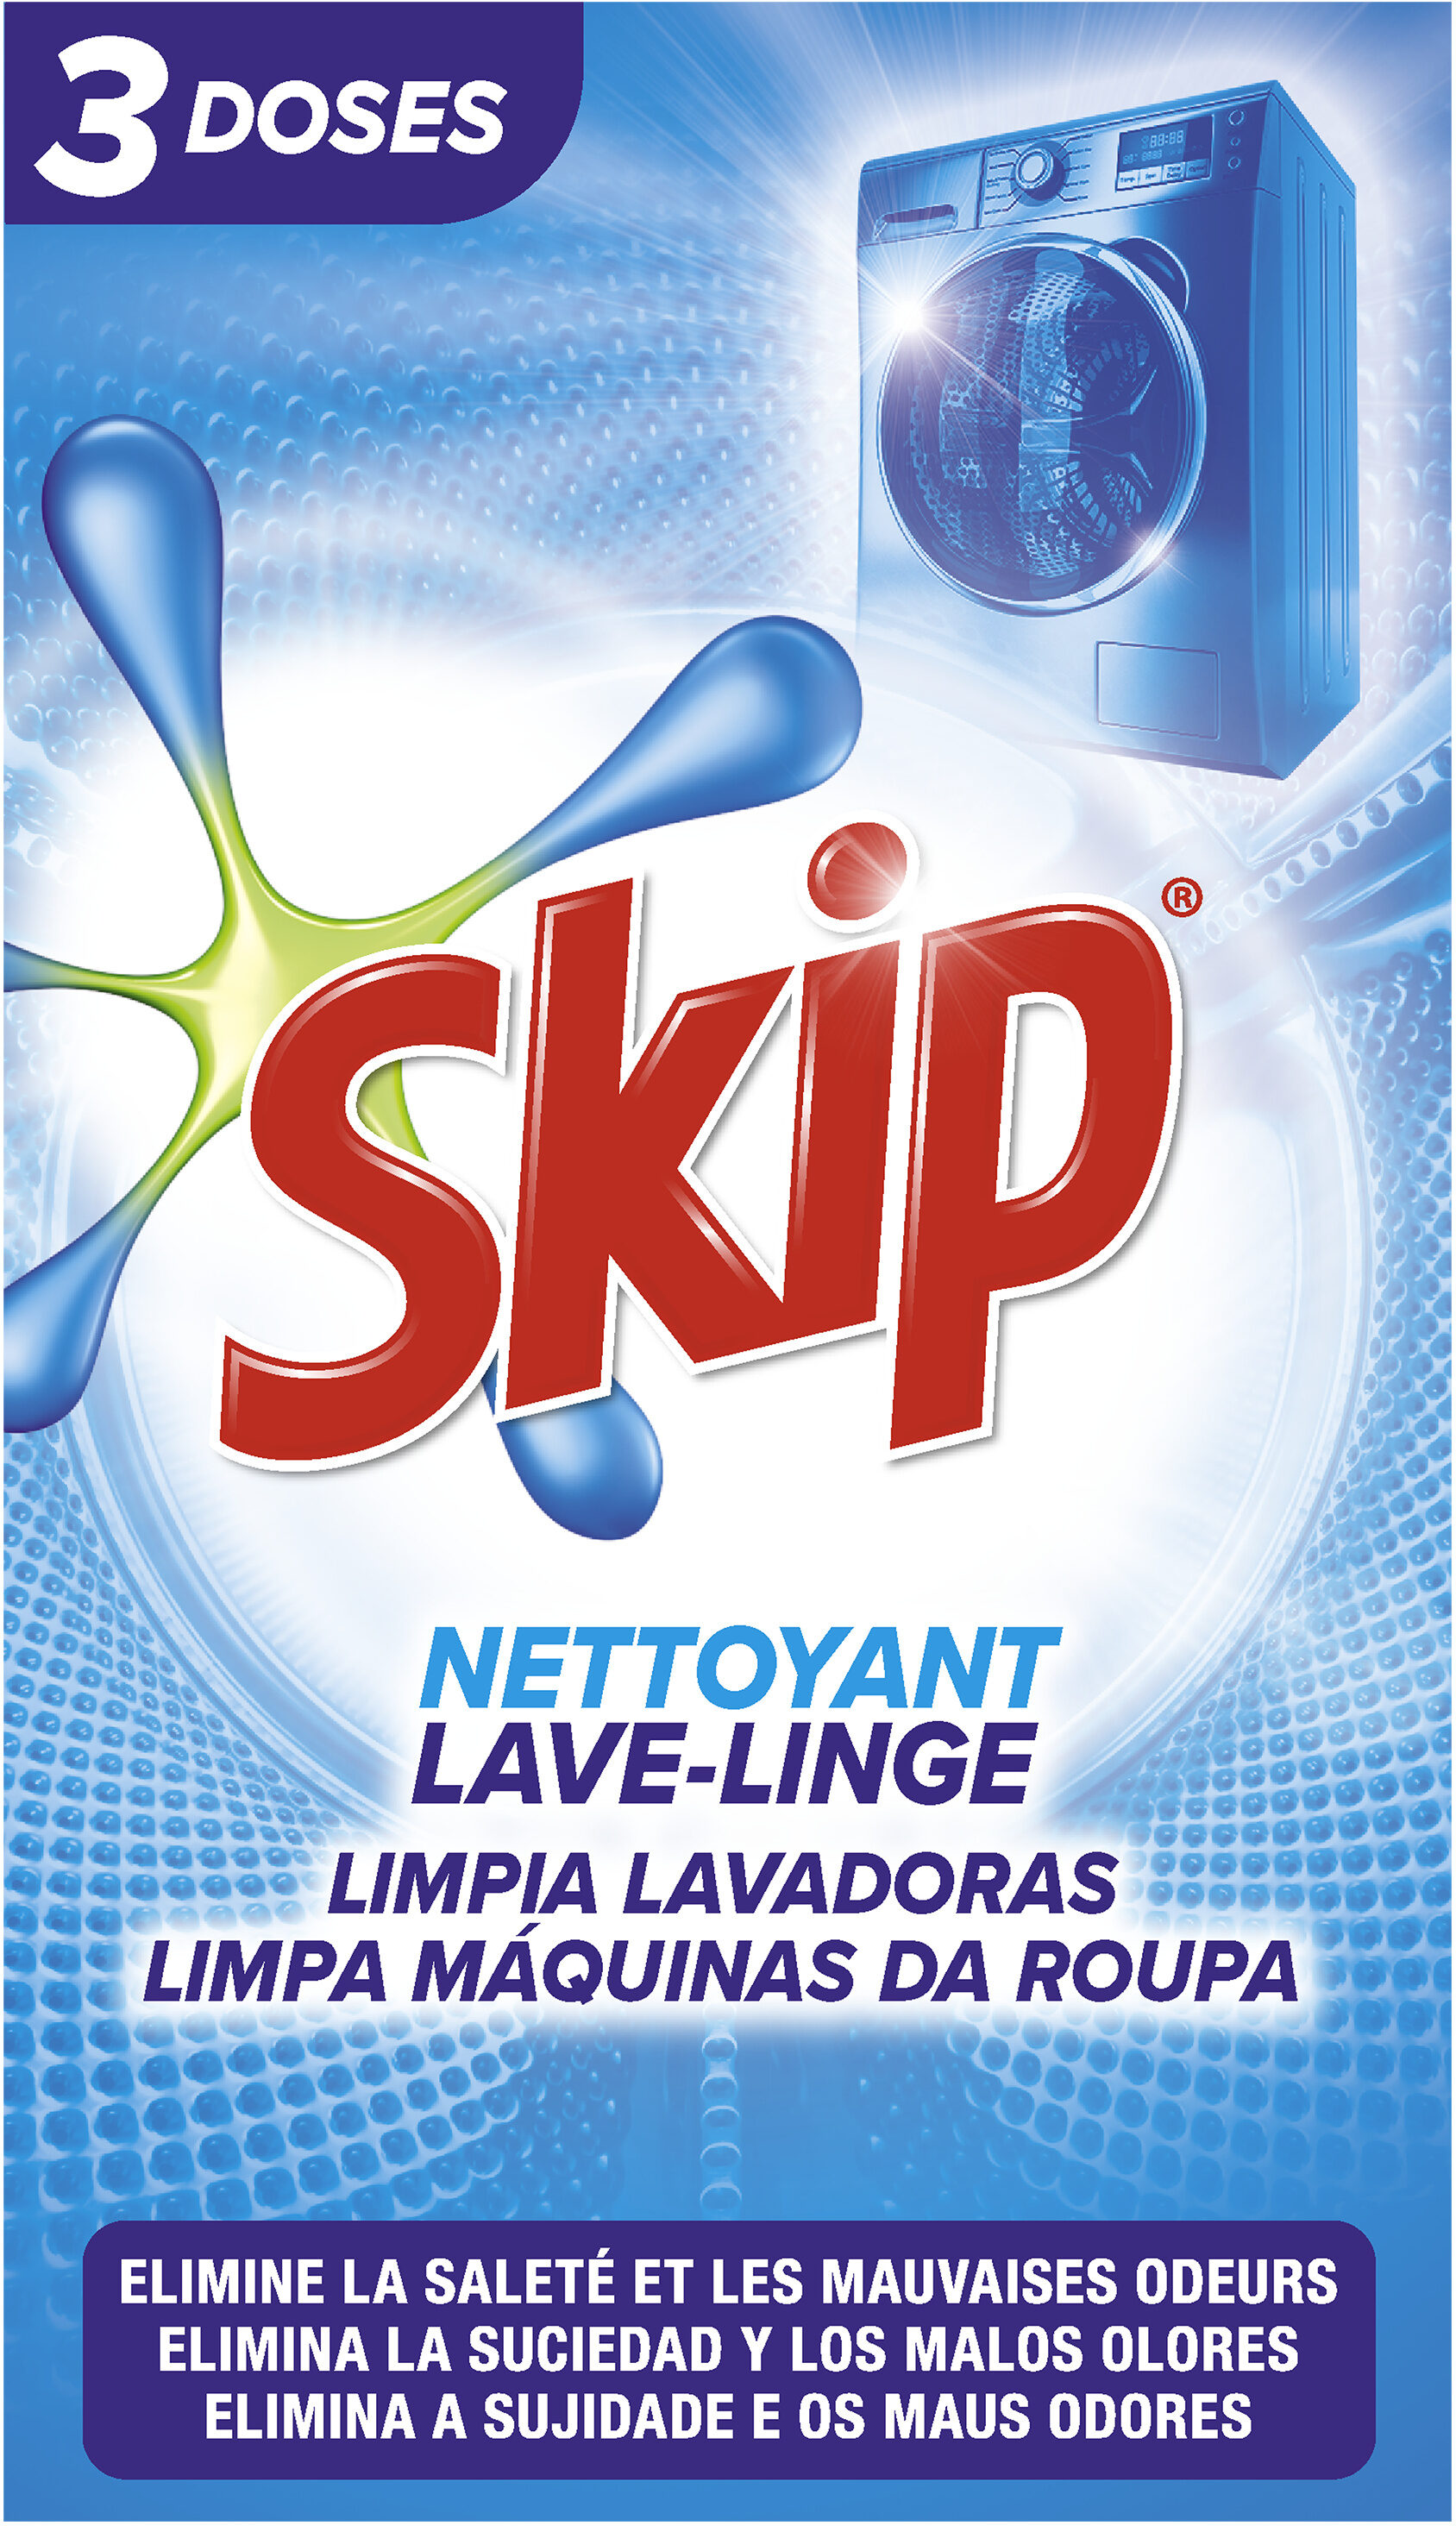 Skip Nettoyant Lave-Linge 3 Doses - Produit - fr